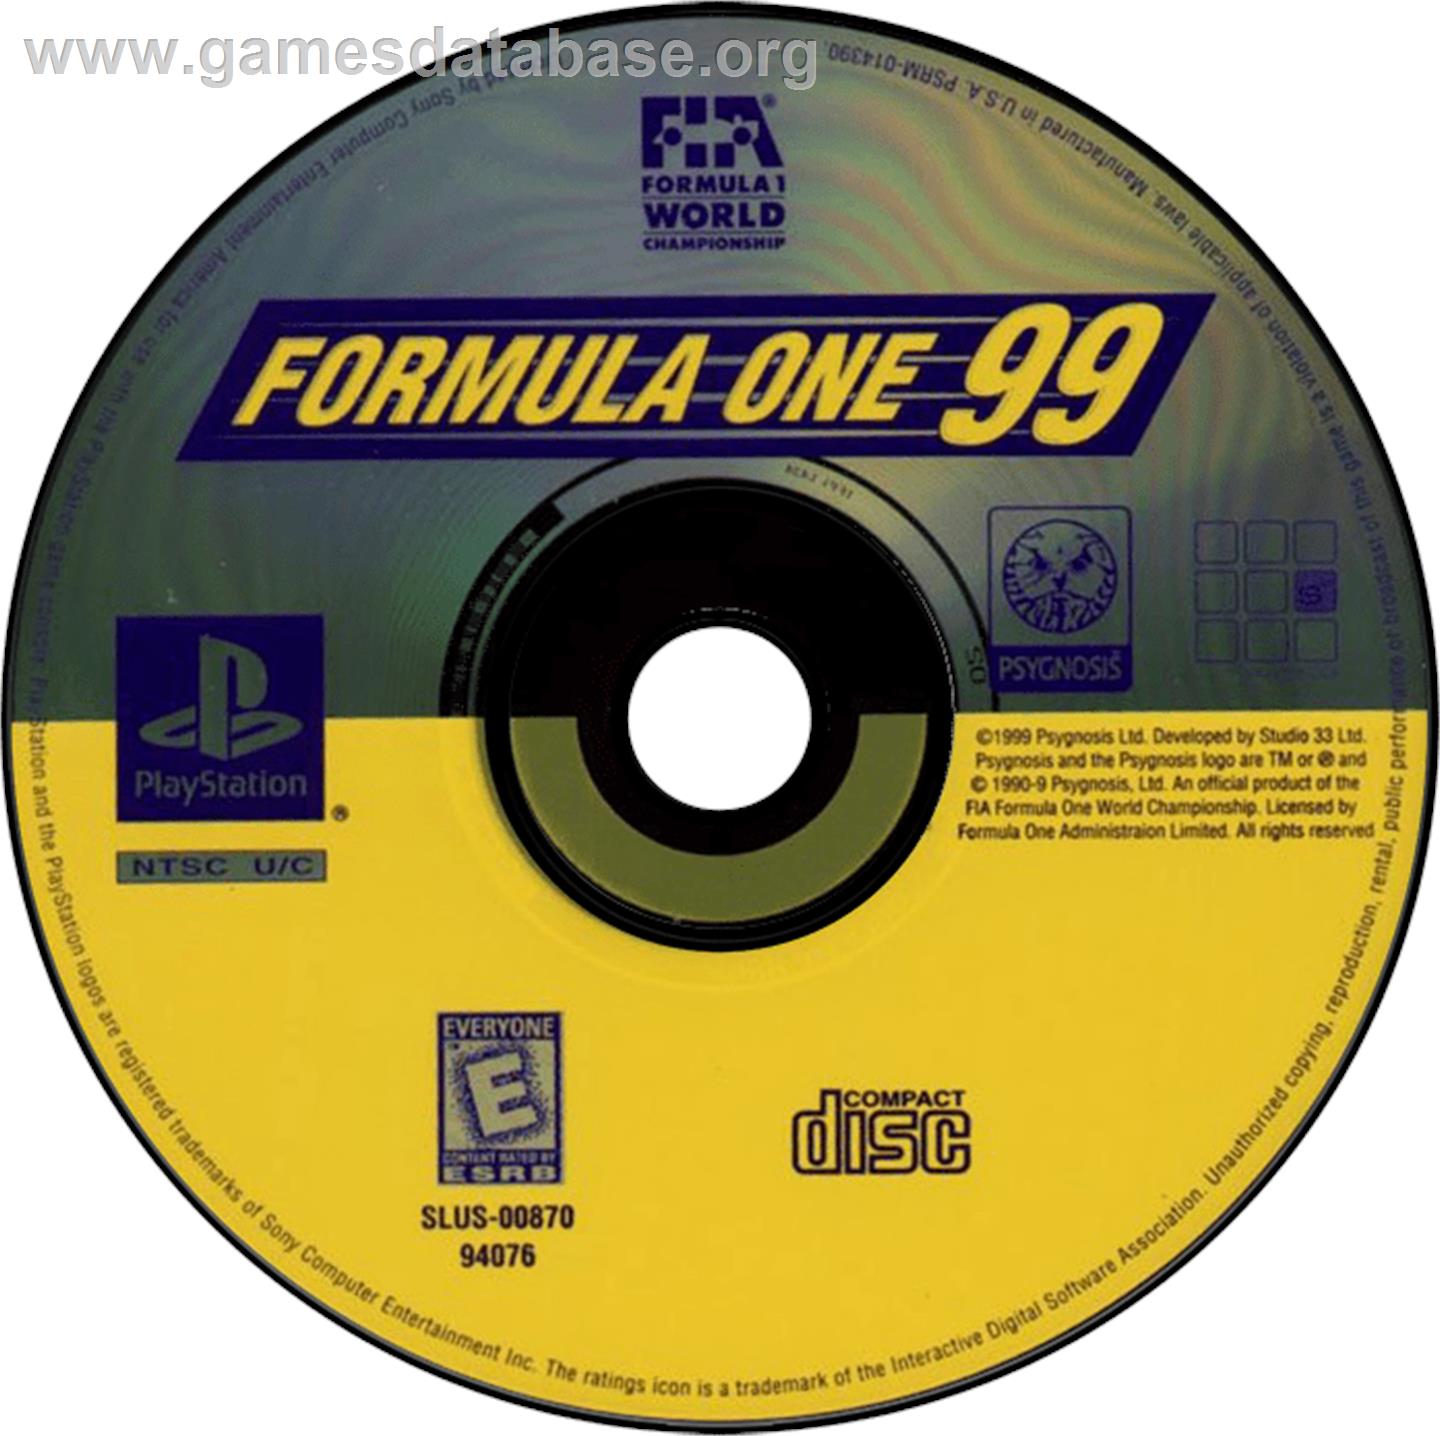 Formula One 99 - Sony Playstation - Artwork - Disc